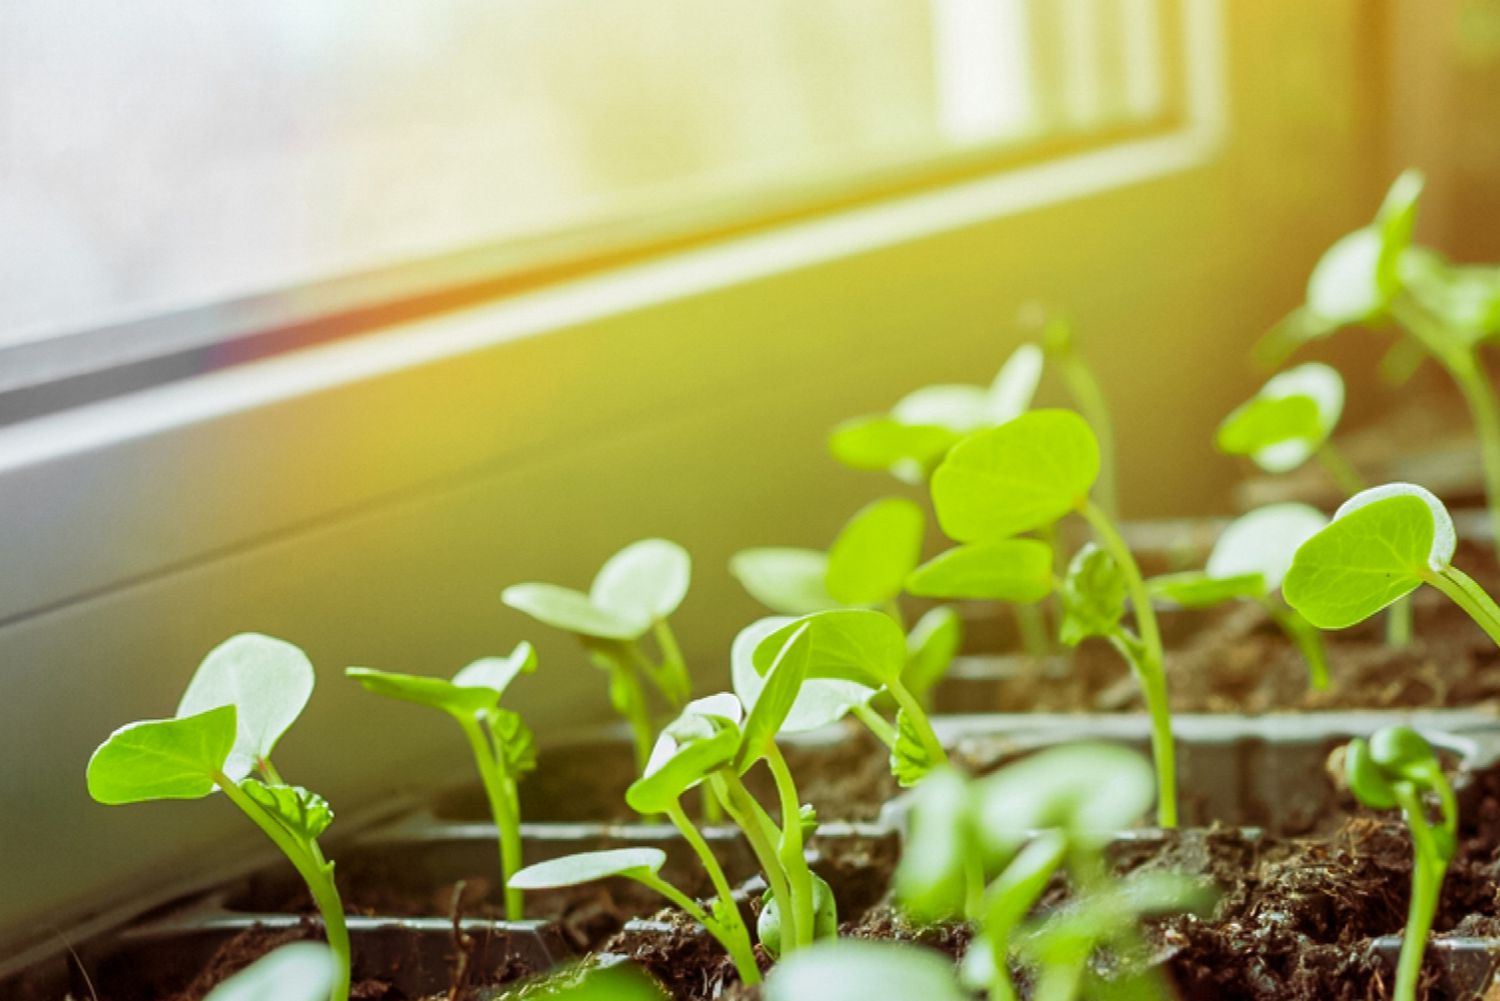 5 Tips for Growing Healthy Seedlings Indoors